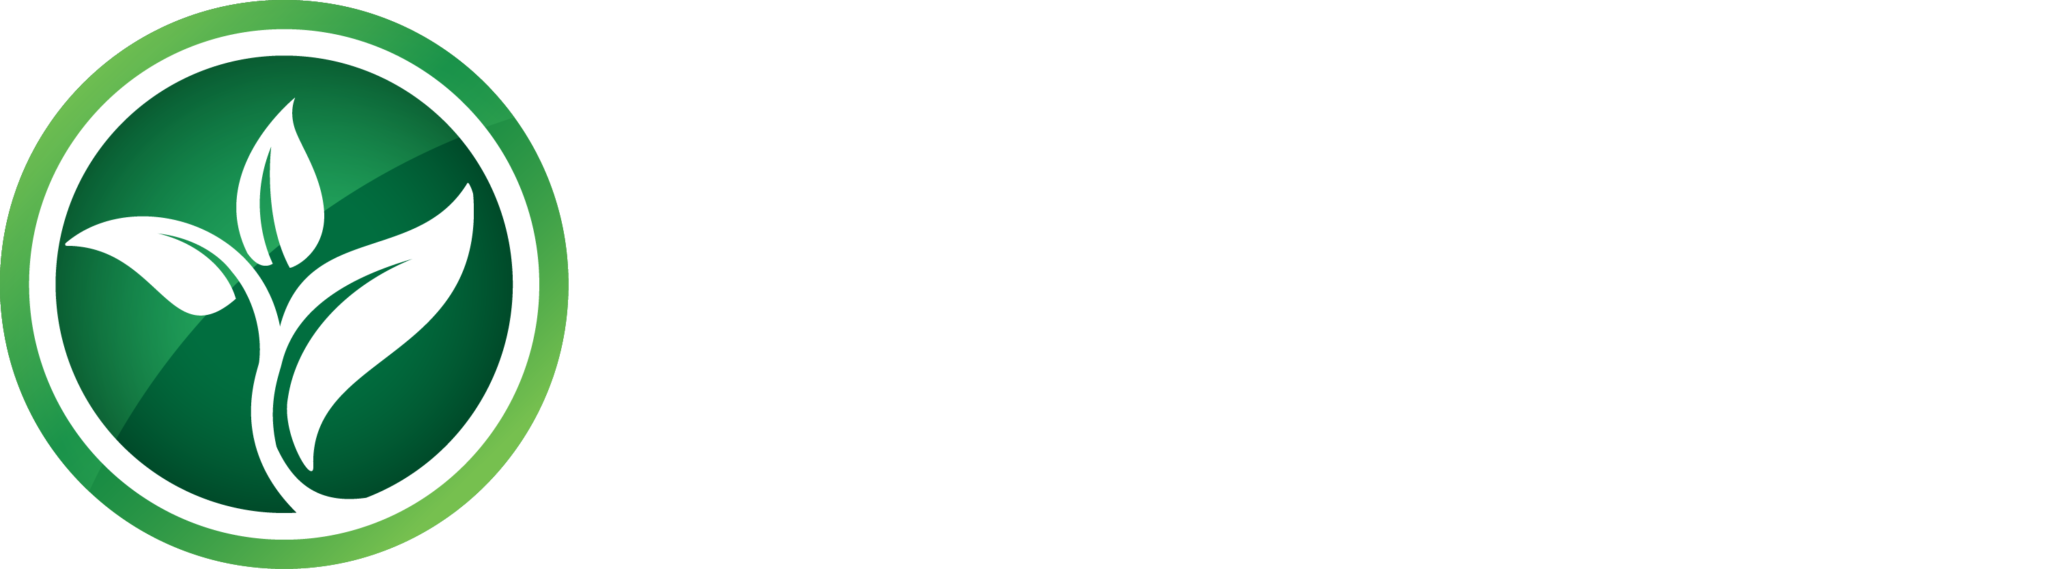 mklandscape